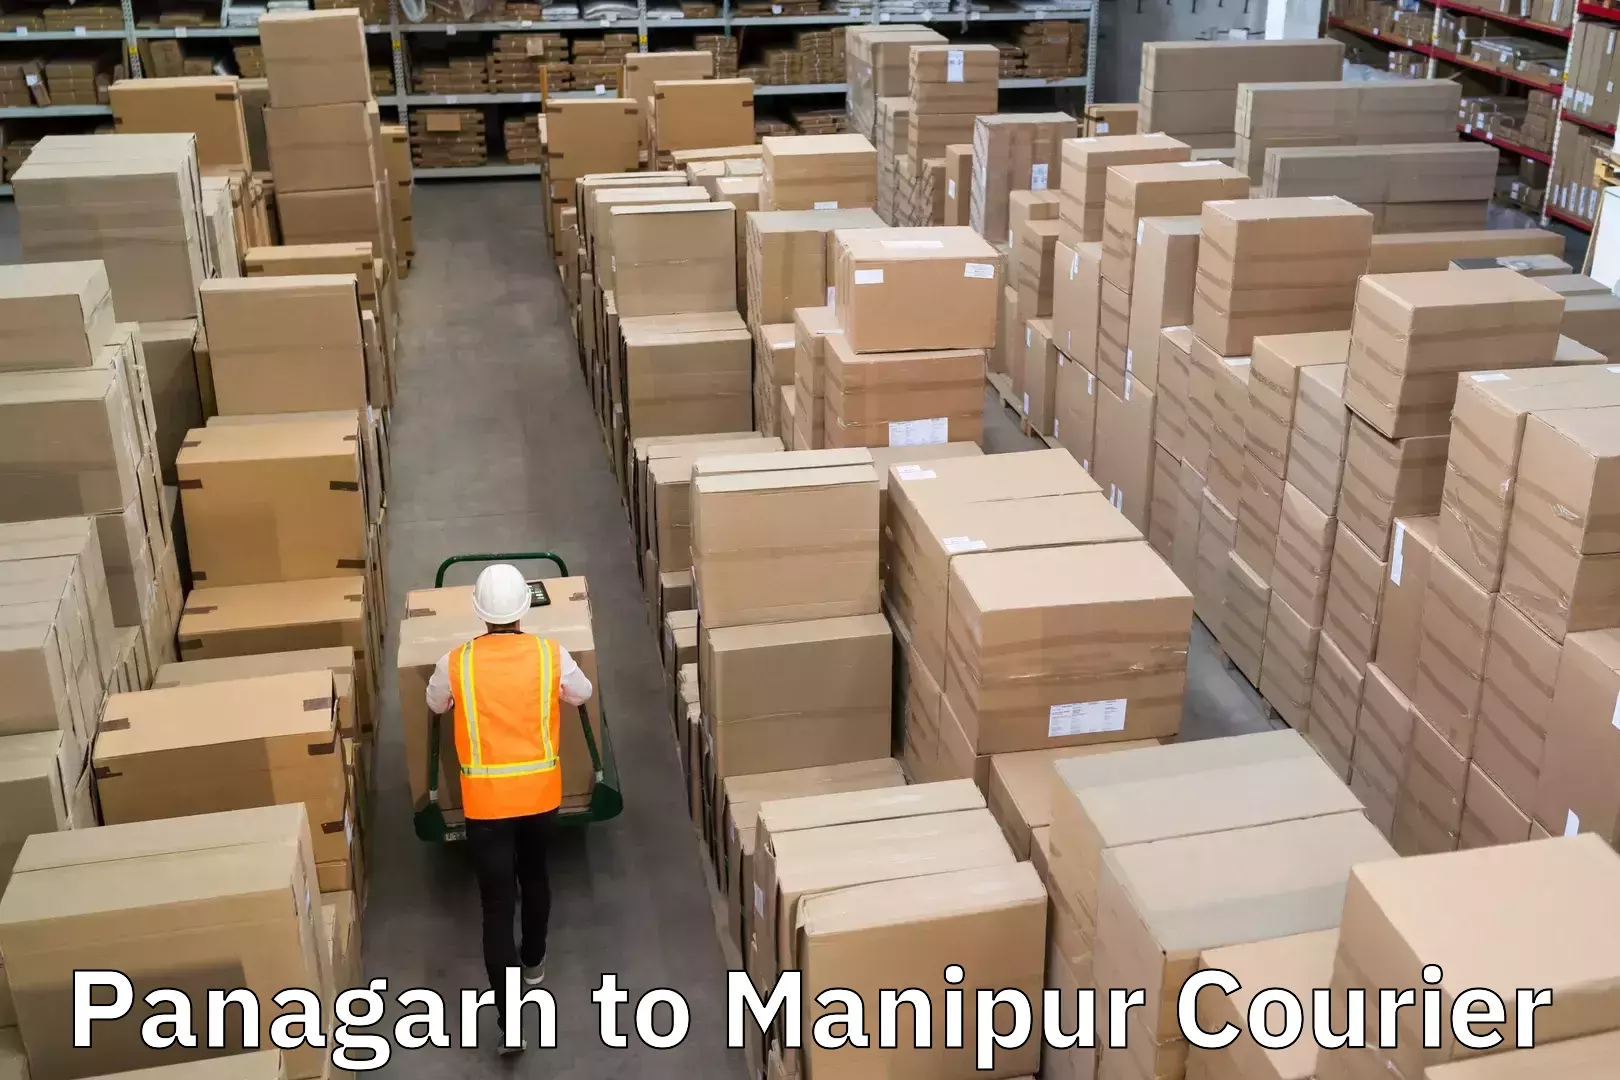 High-speed parcel service Panagarh to Manipur